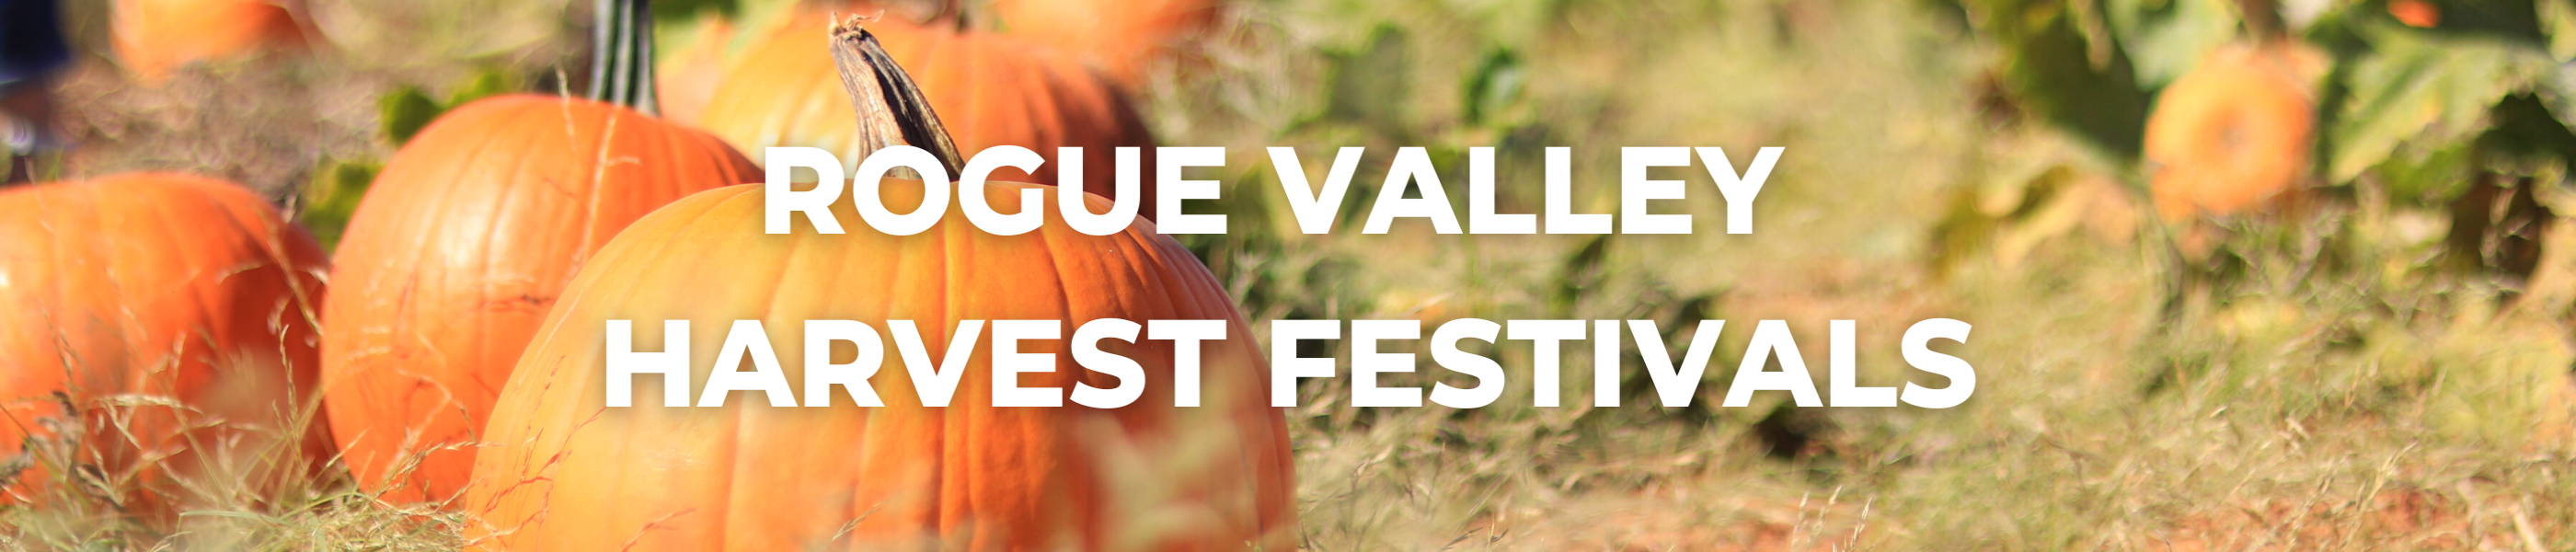 Rogue Valley Harvest Festivals Blog Header